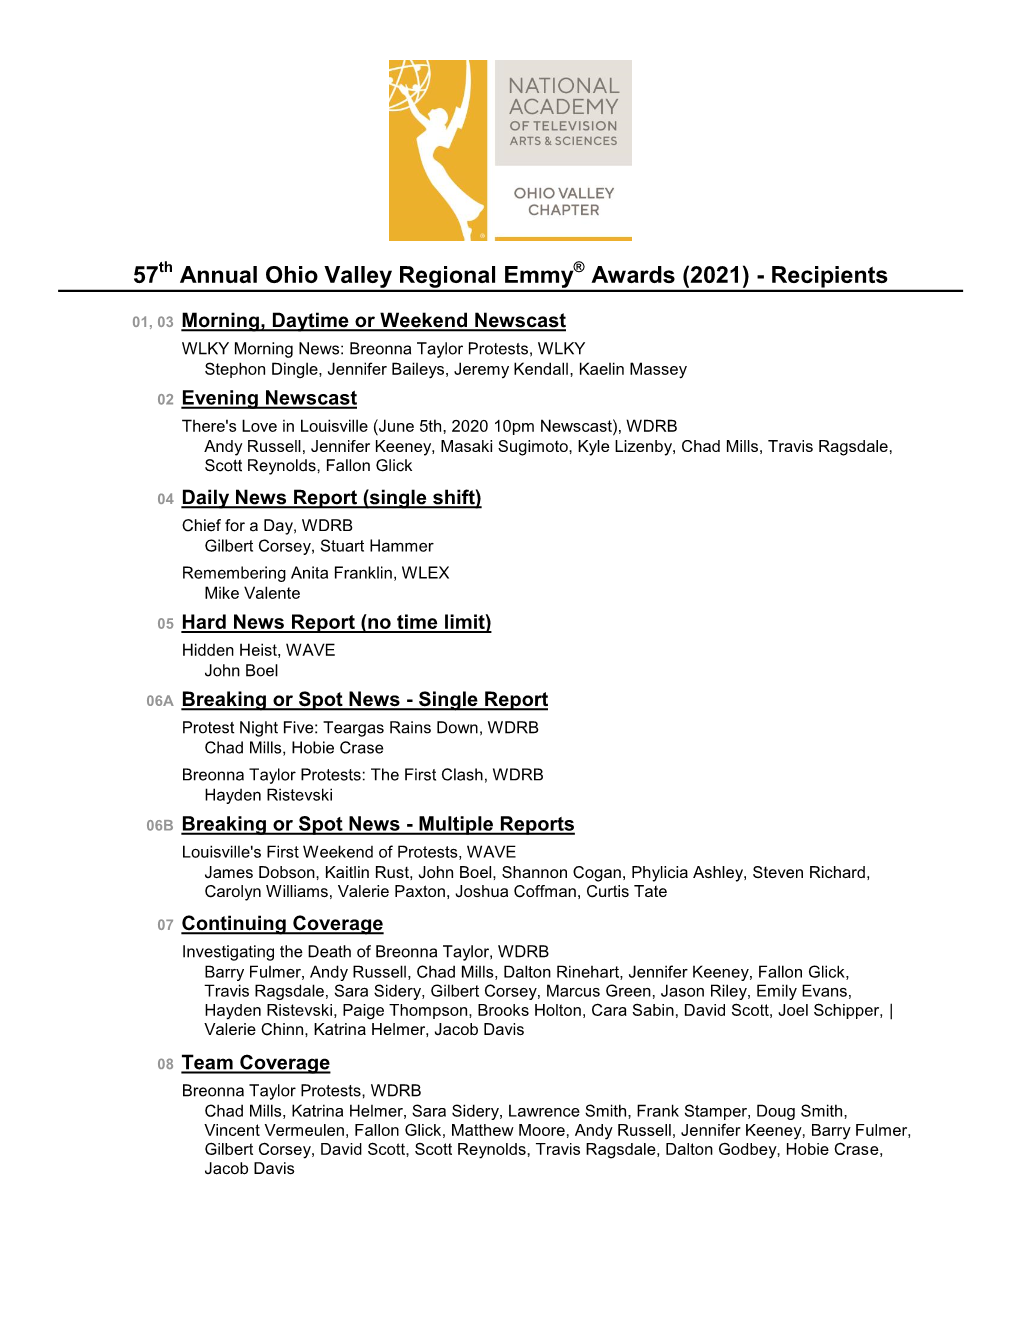 57 Annual Ohio Valley Regional Emmy Awards (2021)